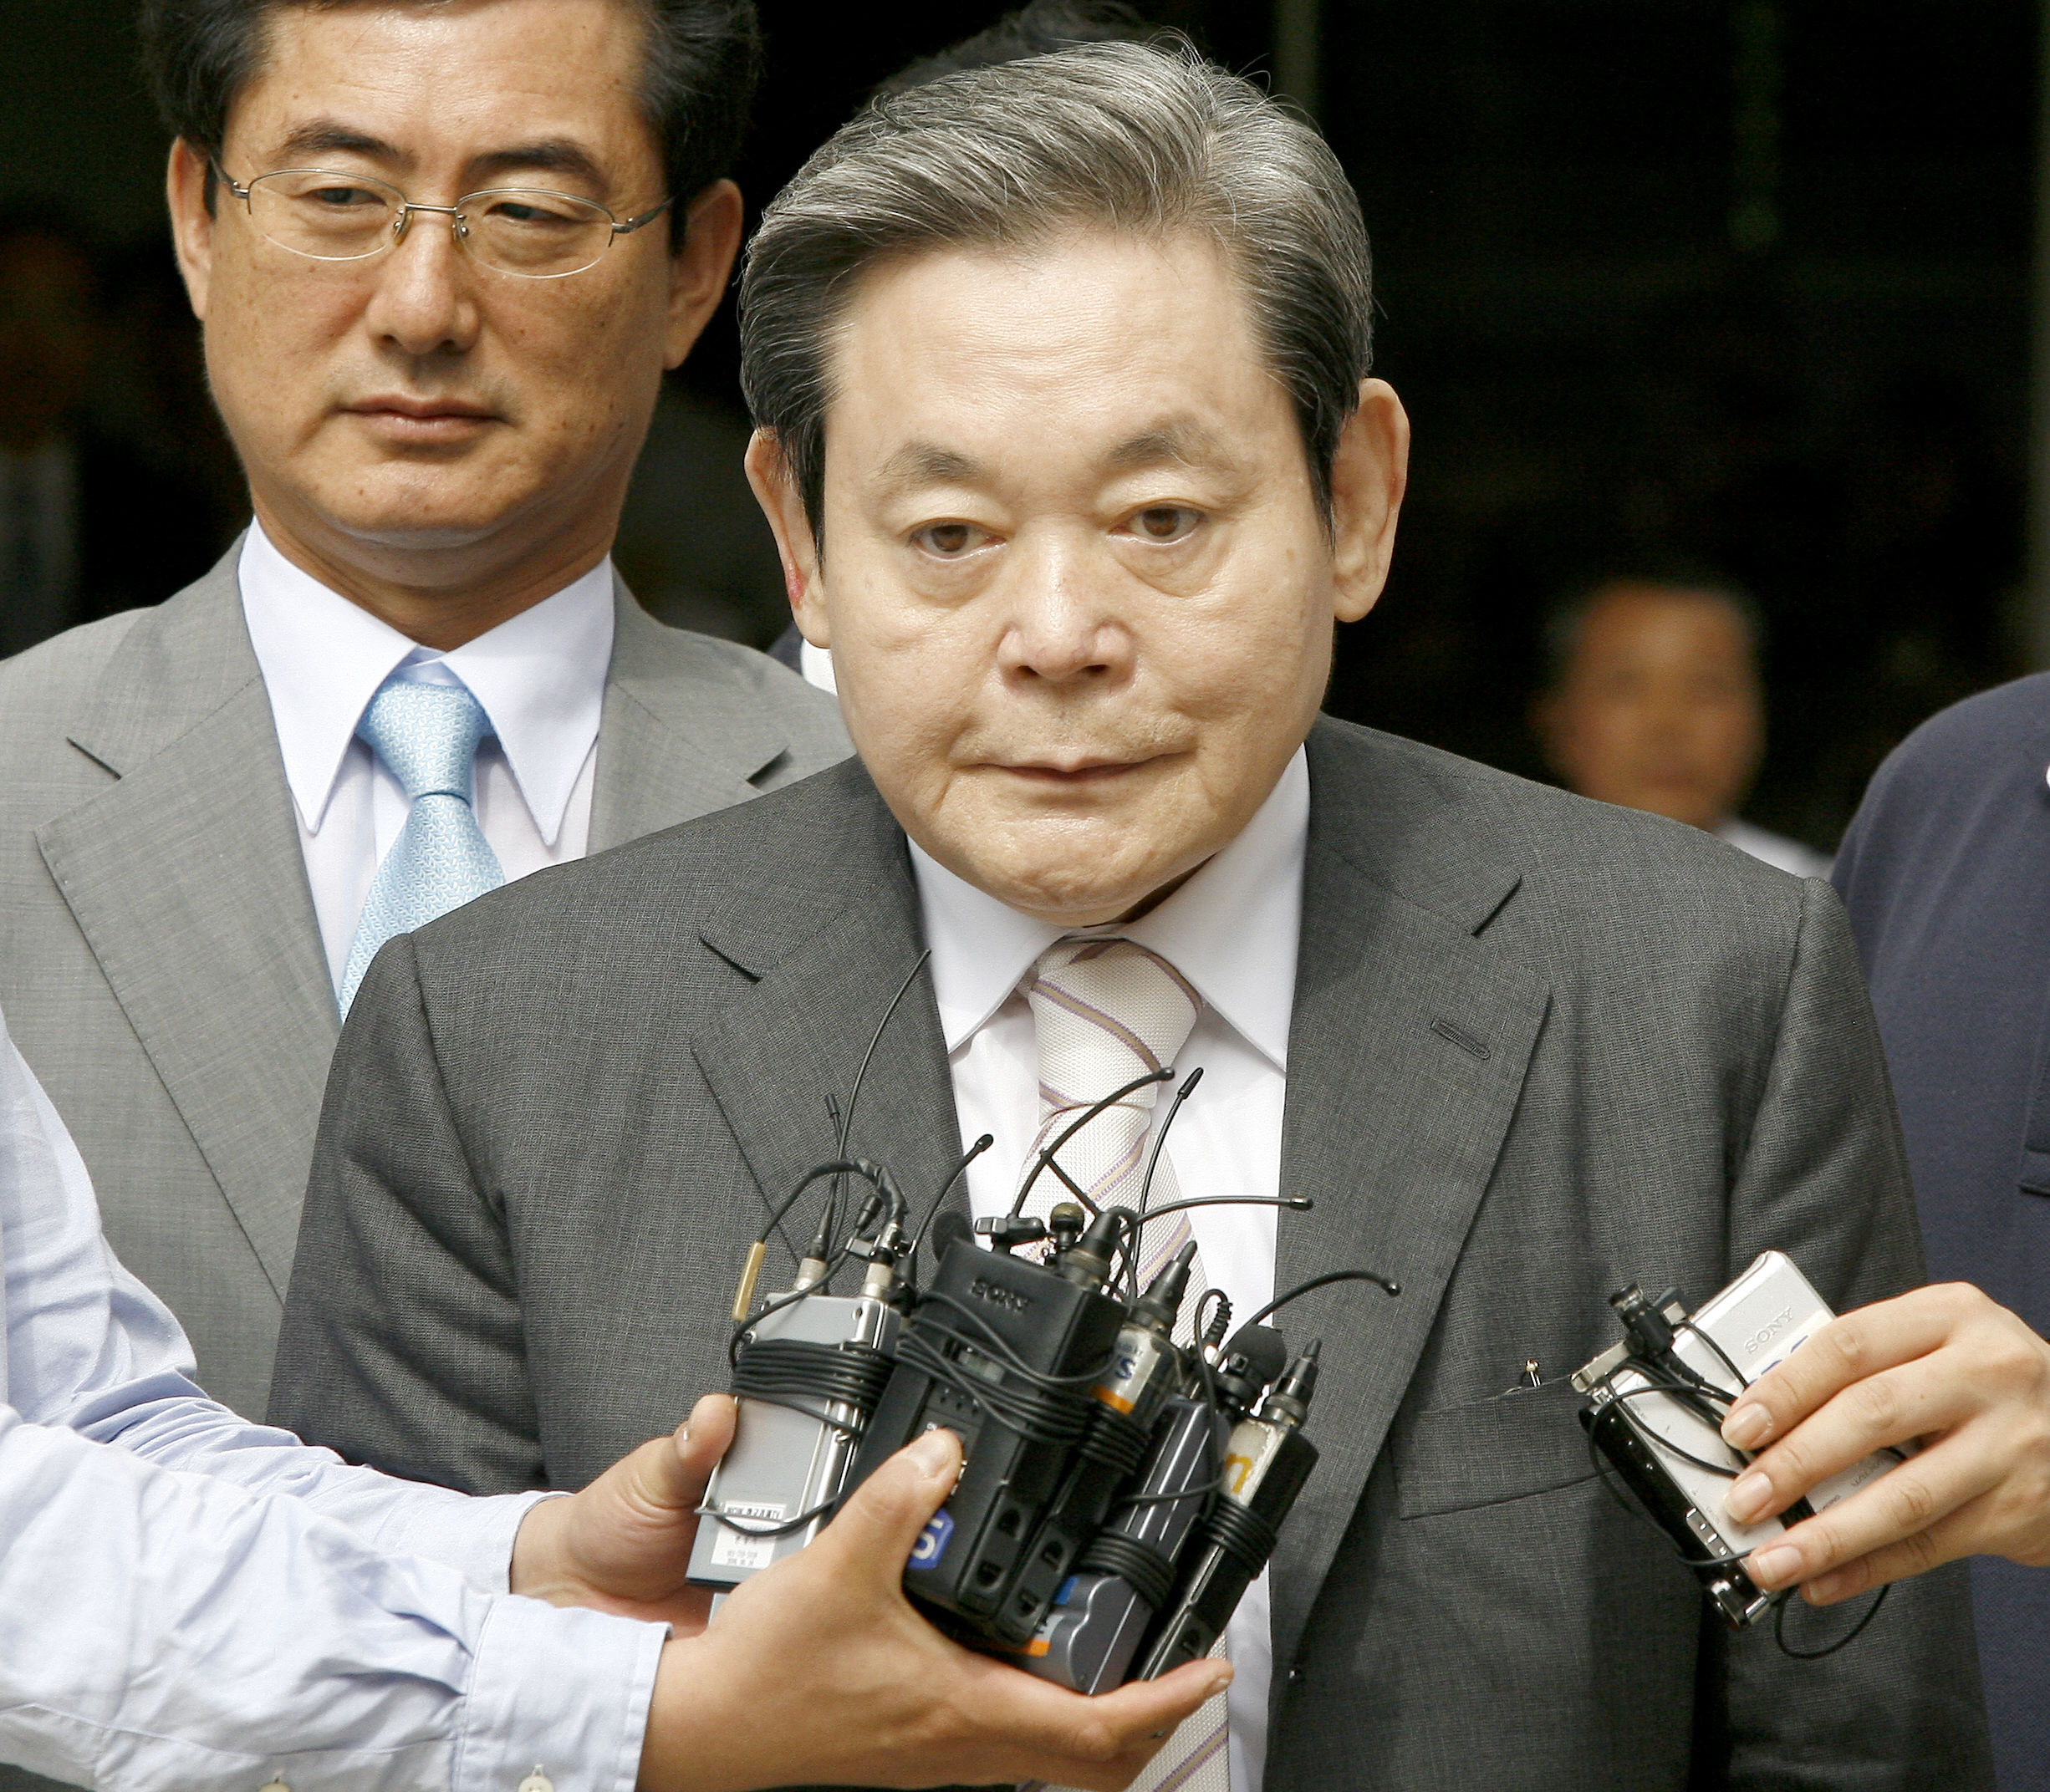 Meghalt a Samsung elnöke